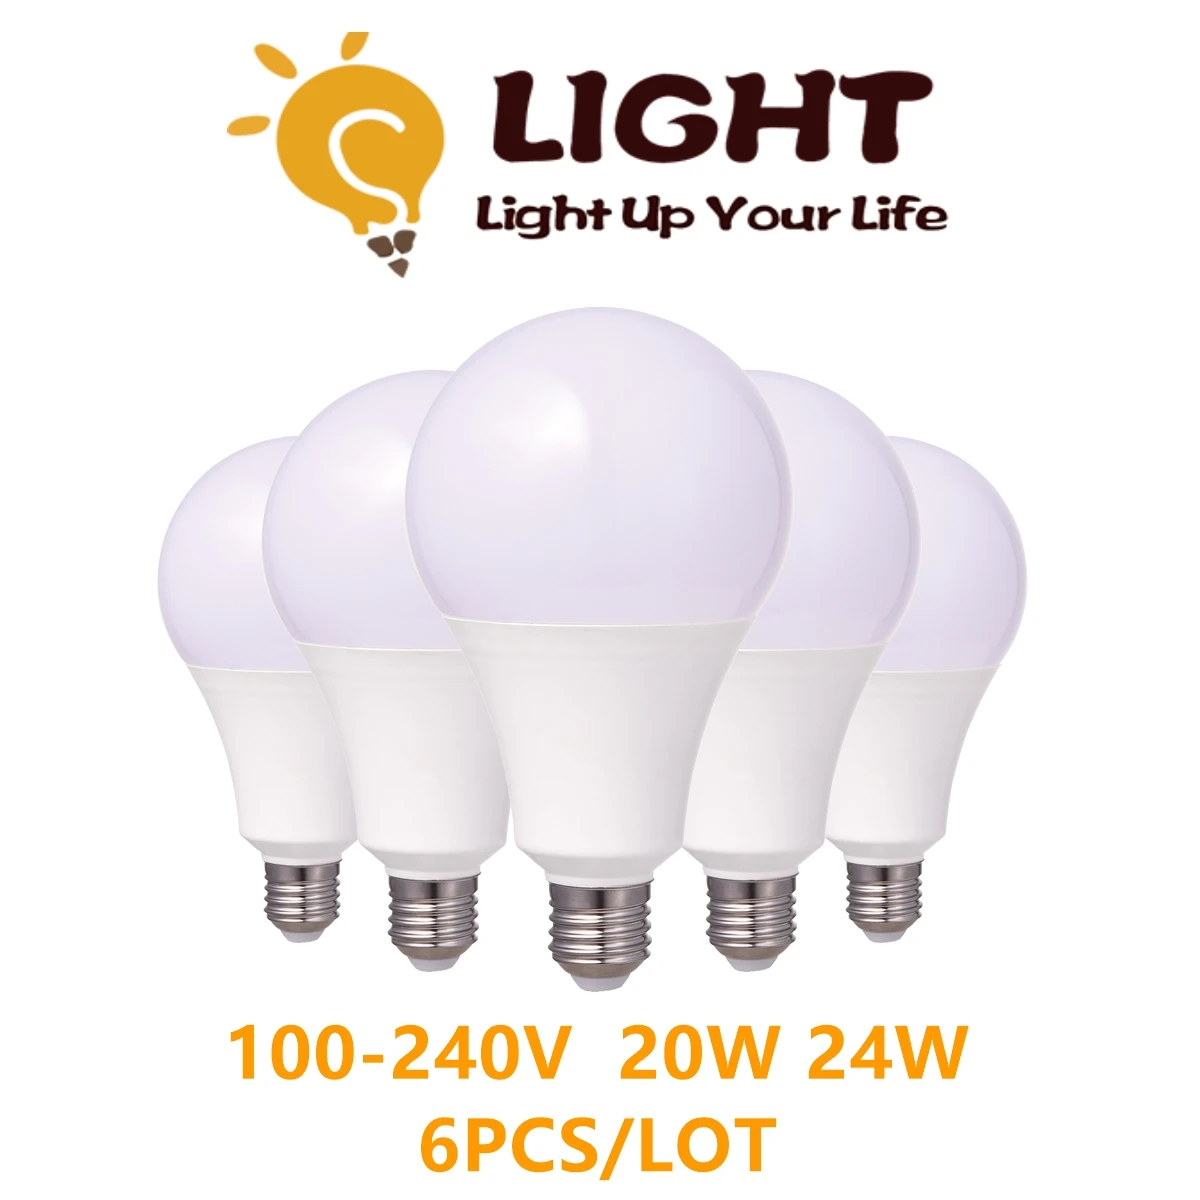 

6PCS/LOT Lâmpada LED de alta potência A80 100V-240V E27 B22 20W 24W 100LM/W for mall home lighting super bright warm white light